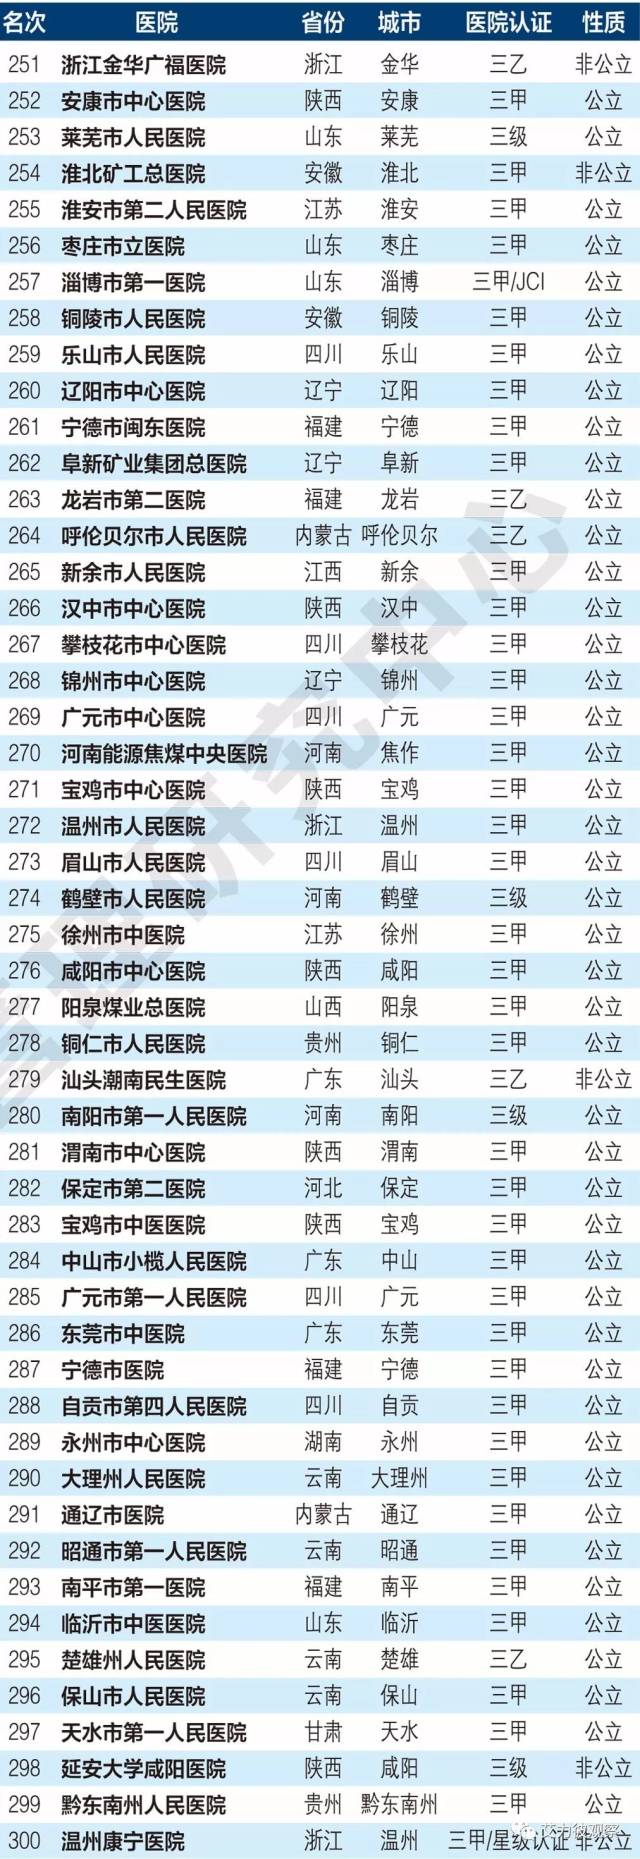 中国地级城市医院100强名单发布!